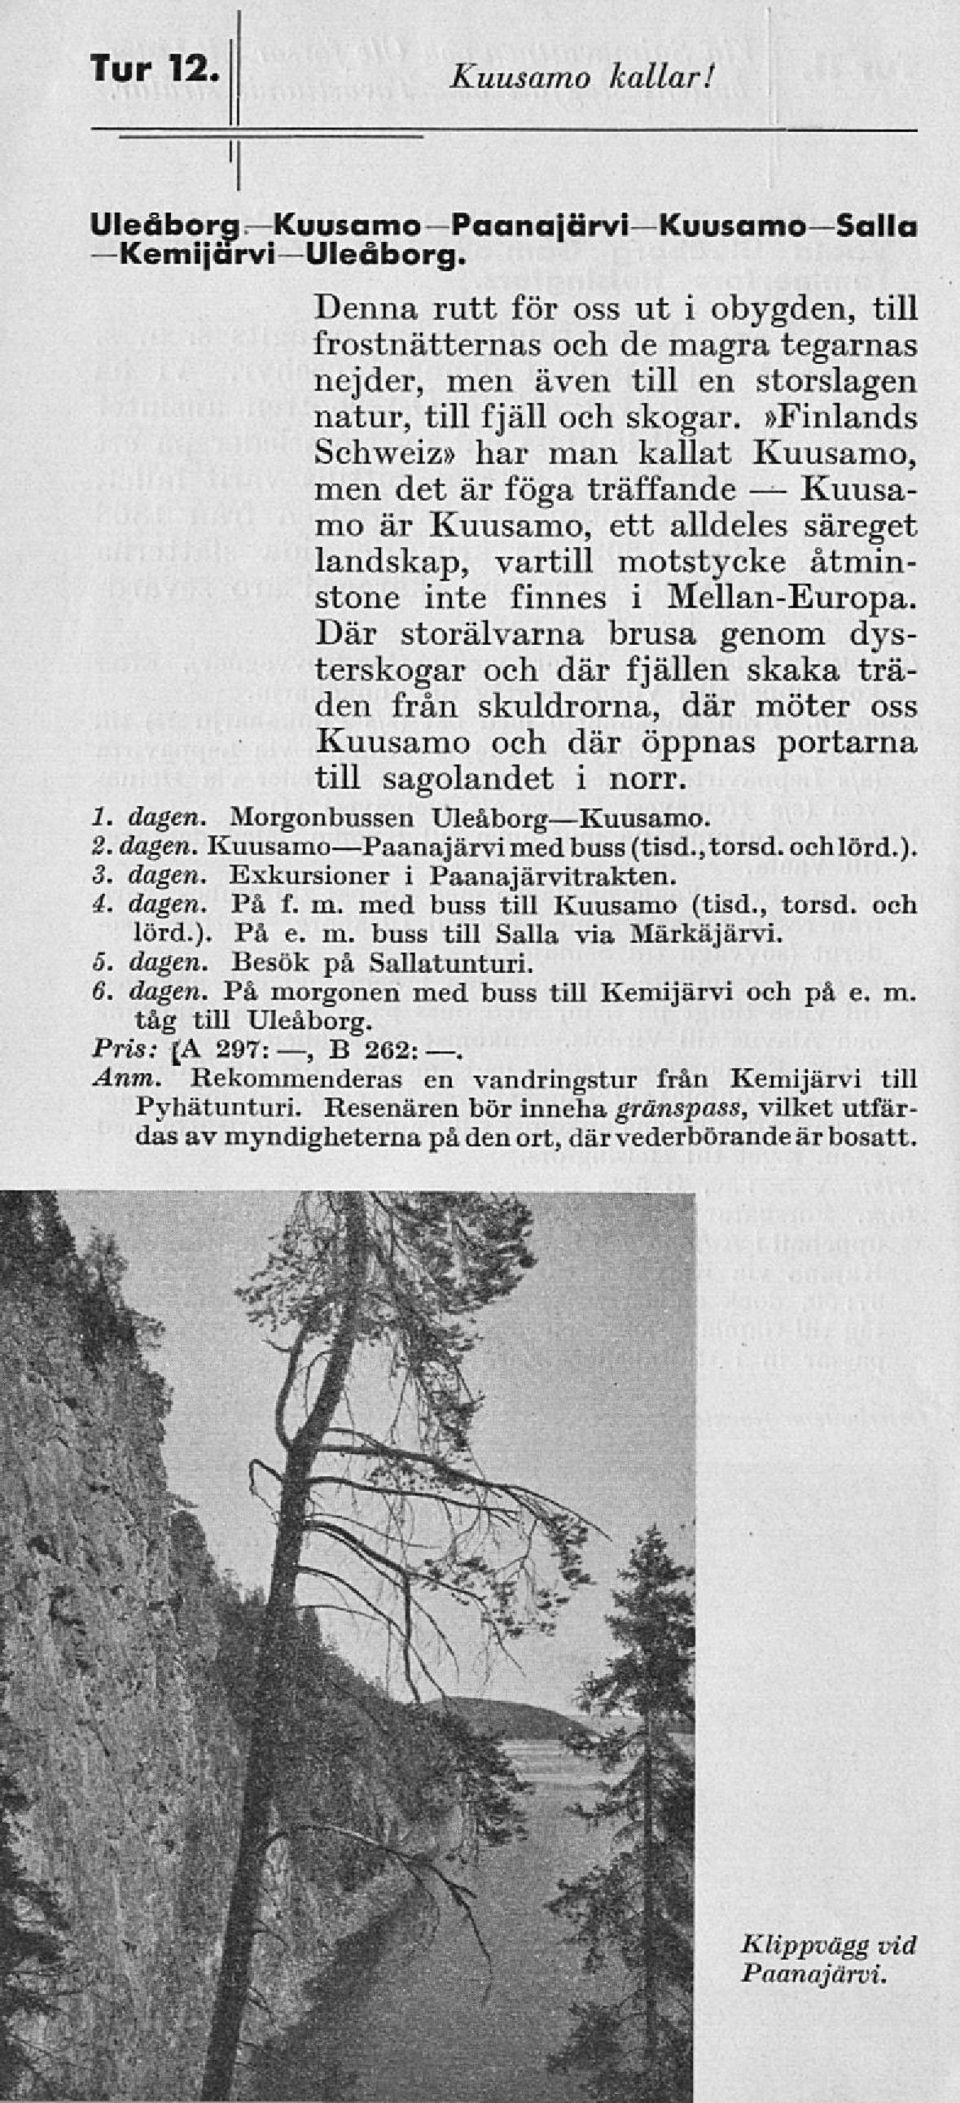 »finlands Schweiz» har man kallat Kuusamo, men det är föga träffande Kuusamo är Kuusamo, ett alldeles säreget landskap, vartill motstycke åtminstone inte finnes i Mellan-Europa.